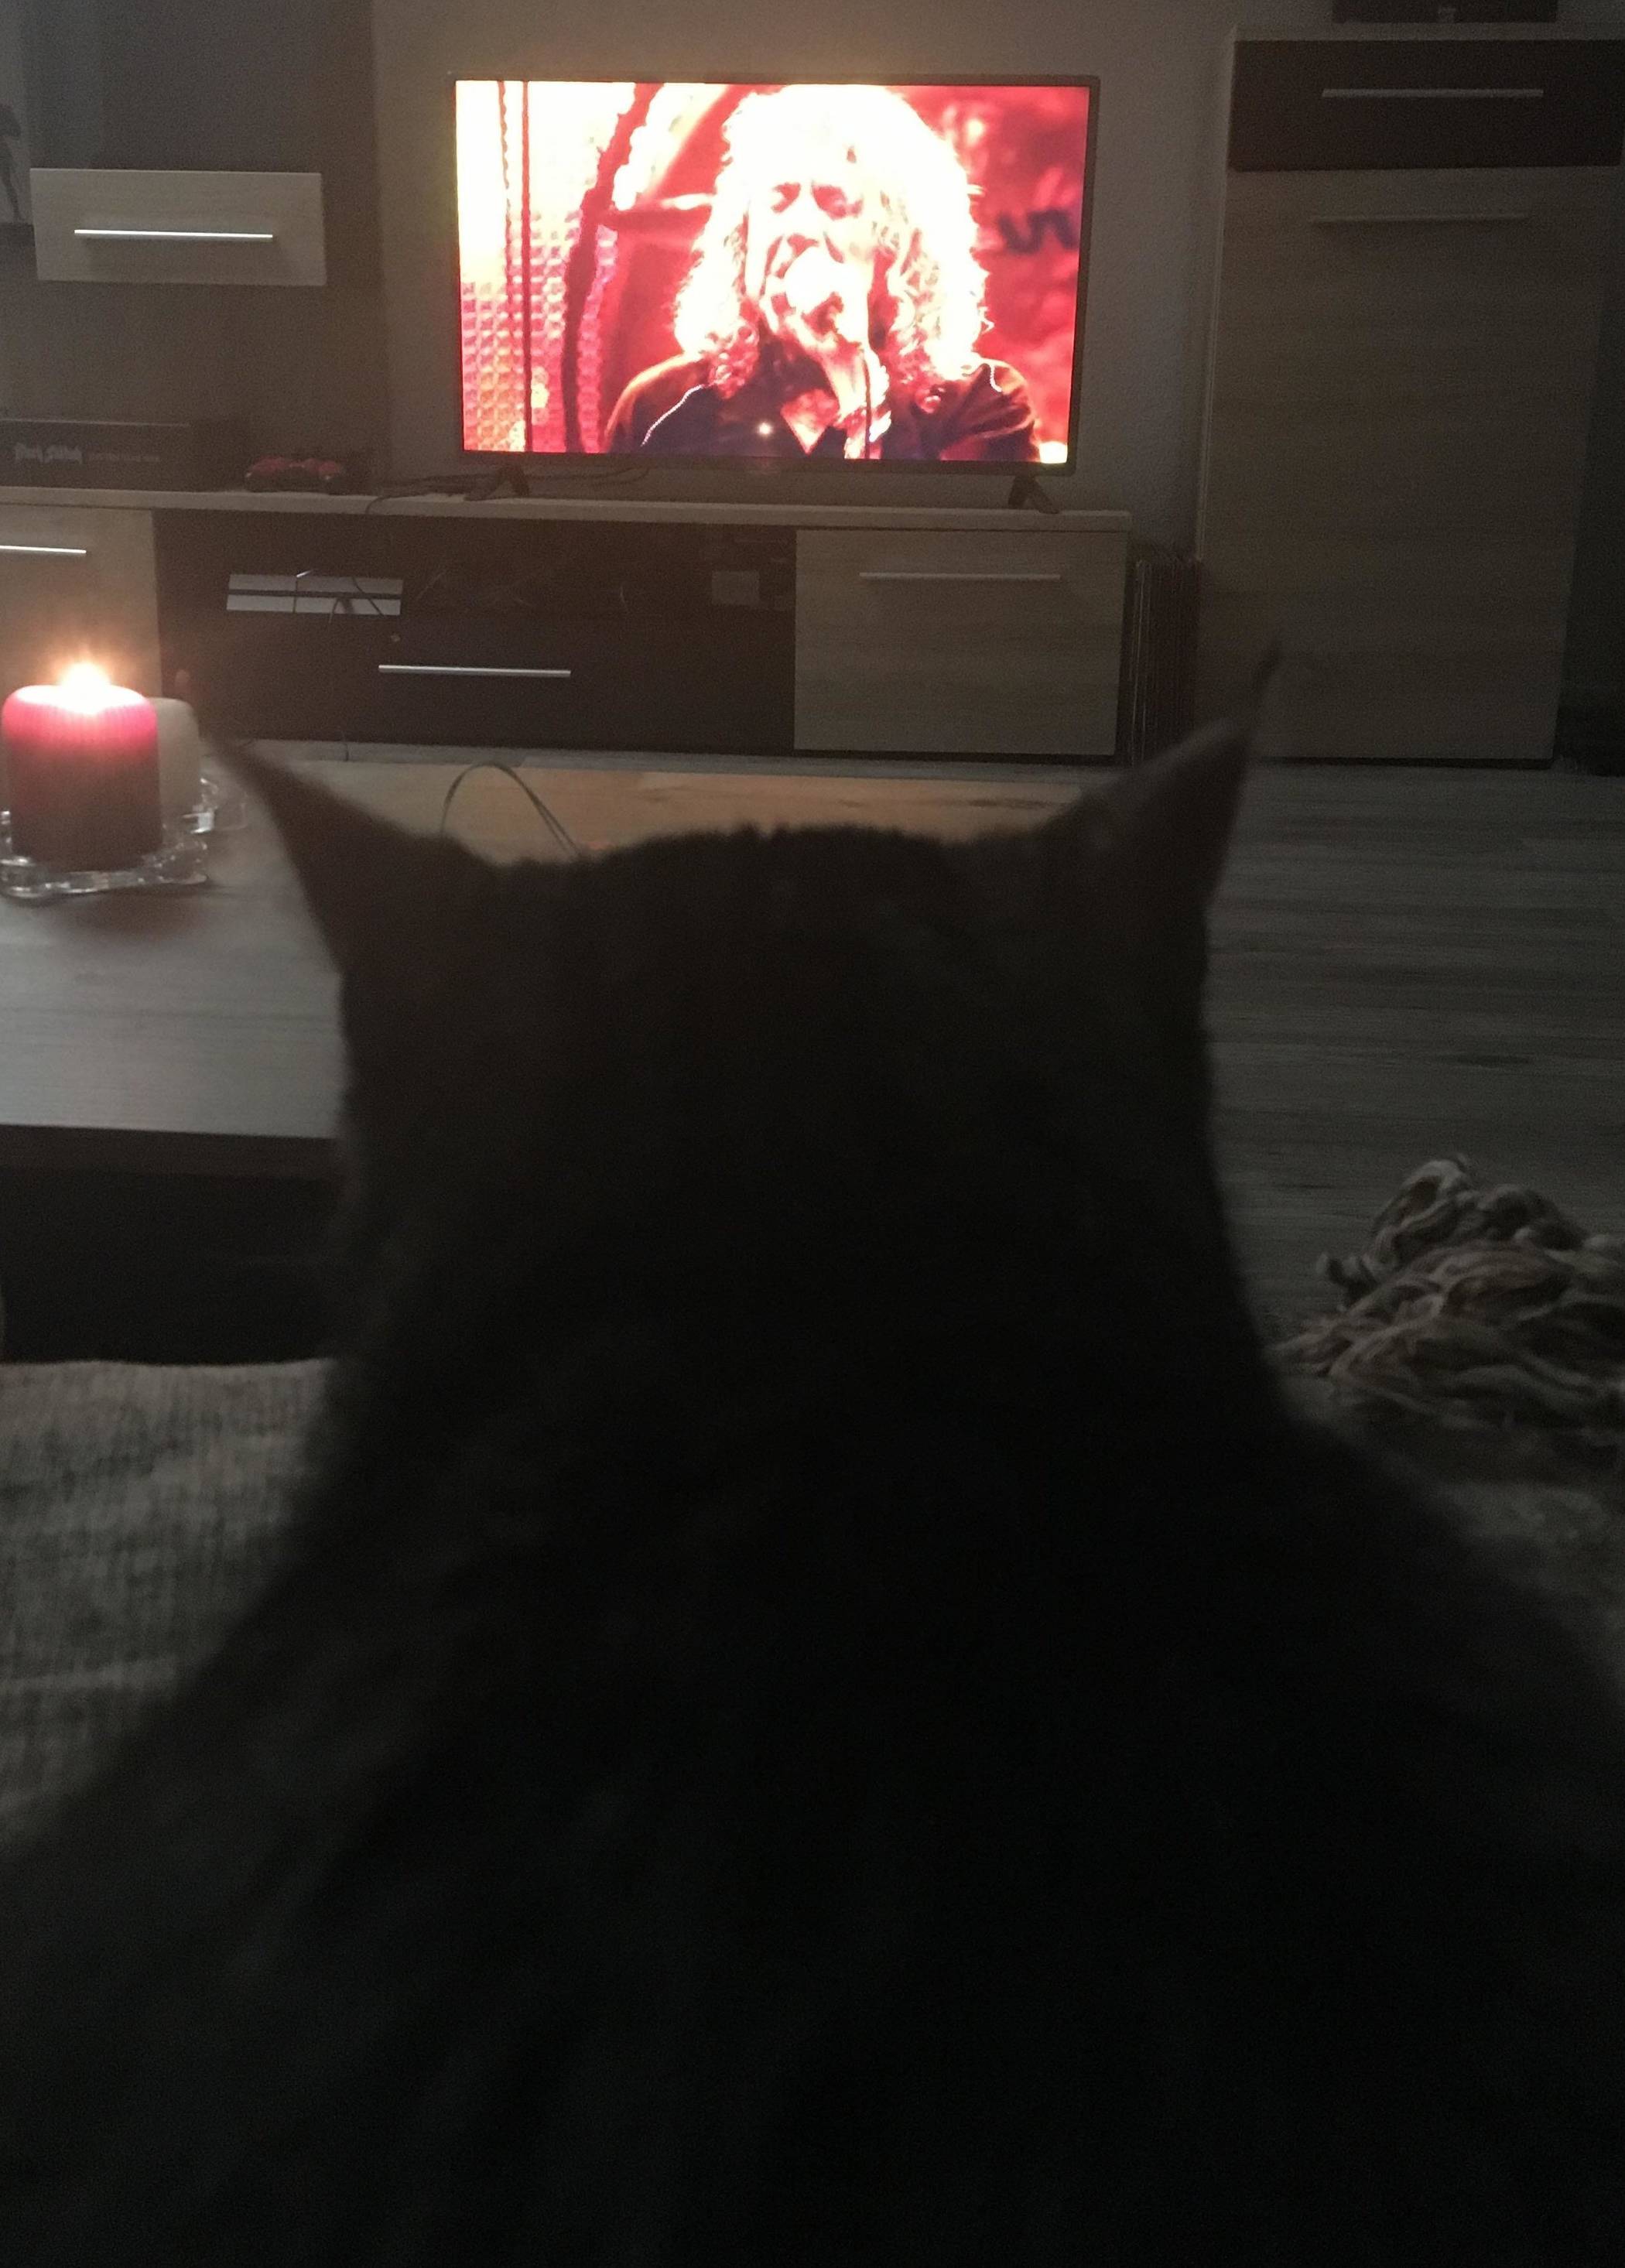 Katze Schnuki vertreibt sich die Zeit mit Muisk-Videos. Am liebsten hört sie Led...